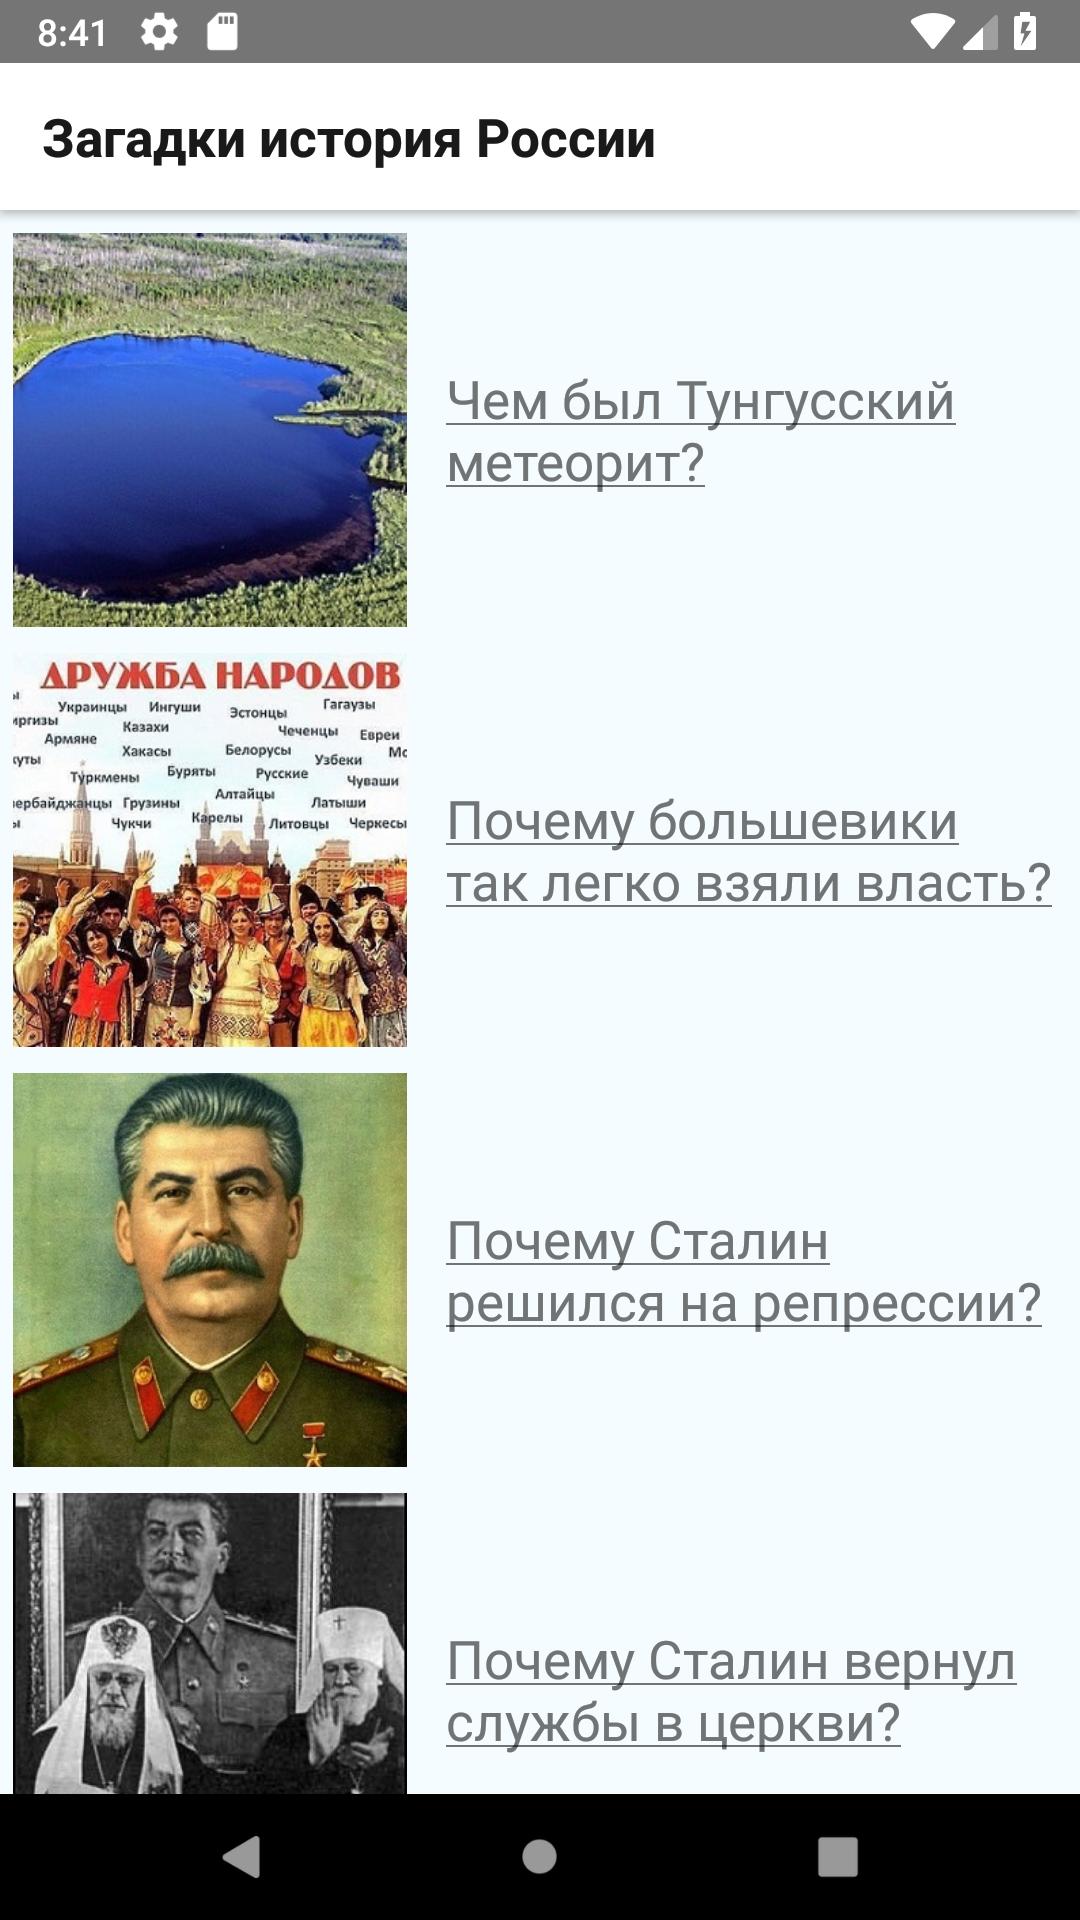 Загадки истории россии